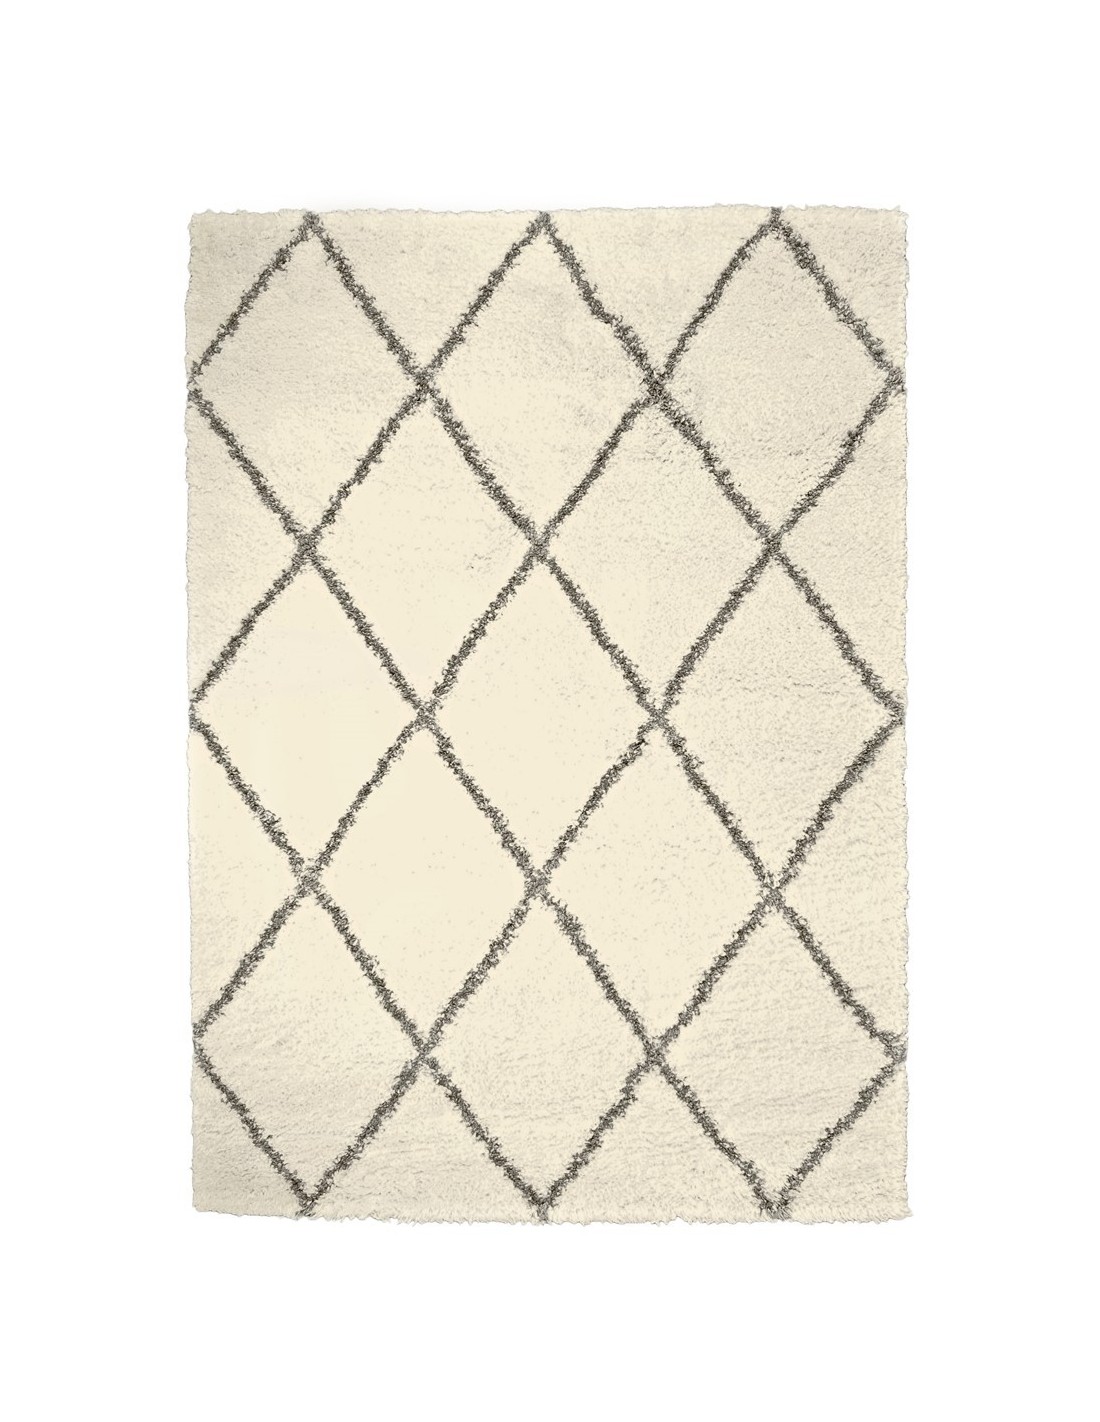 Publicatie beneden langzaam BARI Shaggy tapijt met ruitpatroon, 160x230 cm